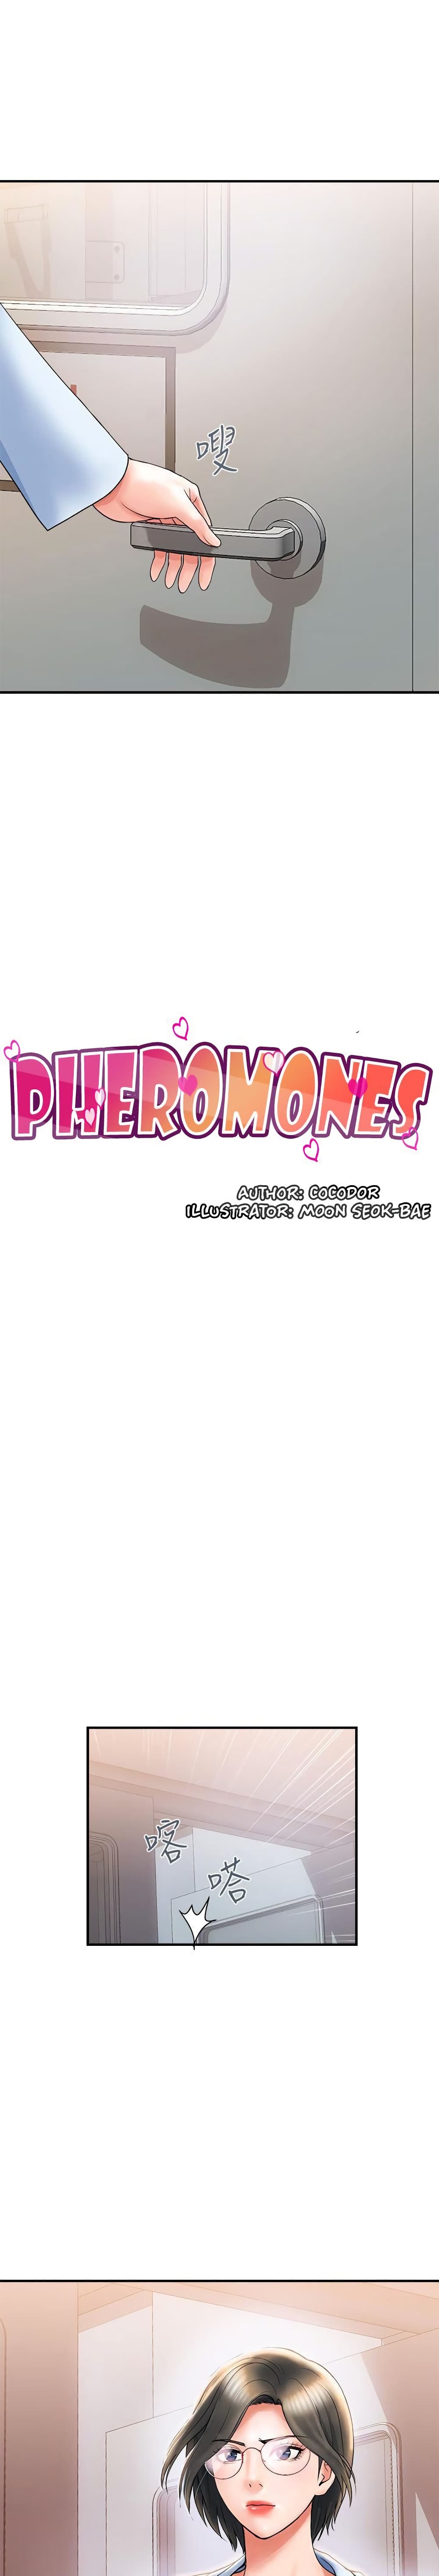 Pheromones 6 03